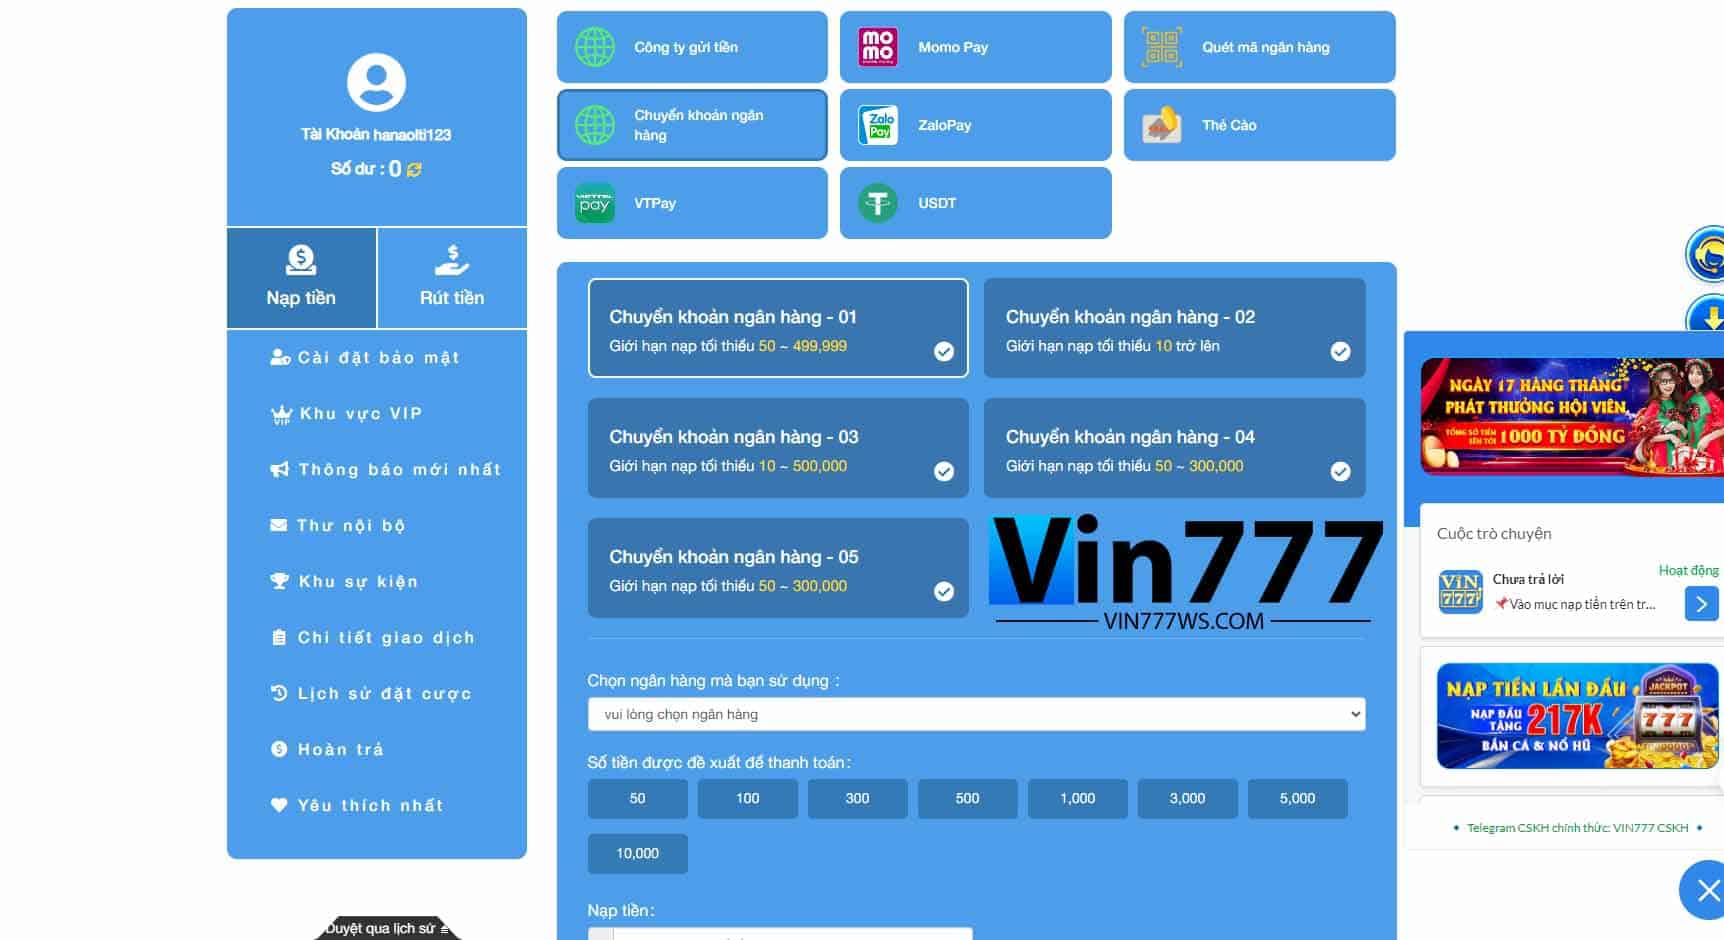 Nhà cái Vin777 hỗ trợ đa dạng các phương thức nạp tiền khác nhau